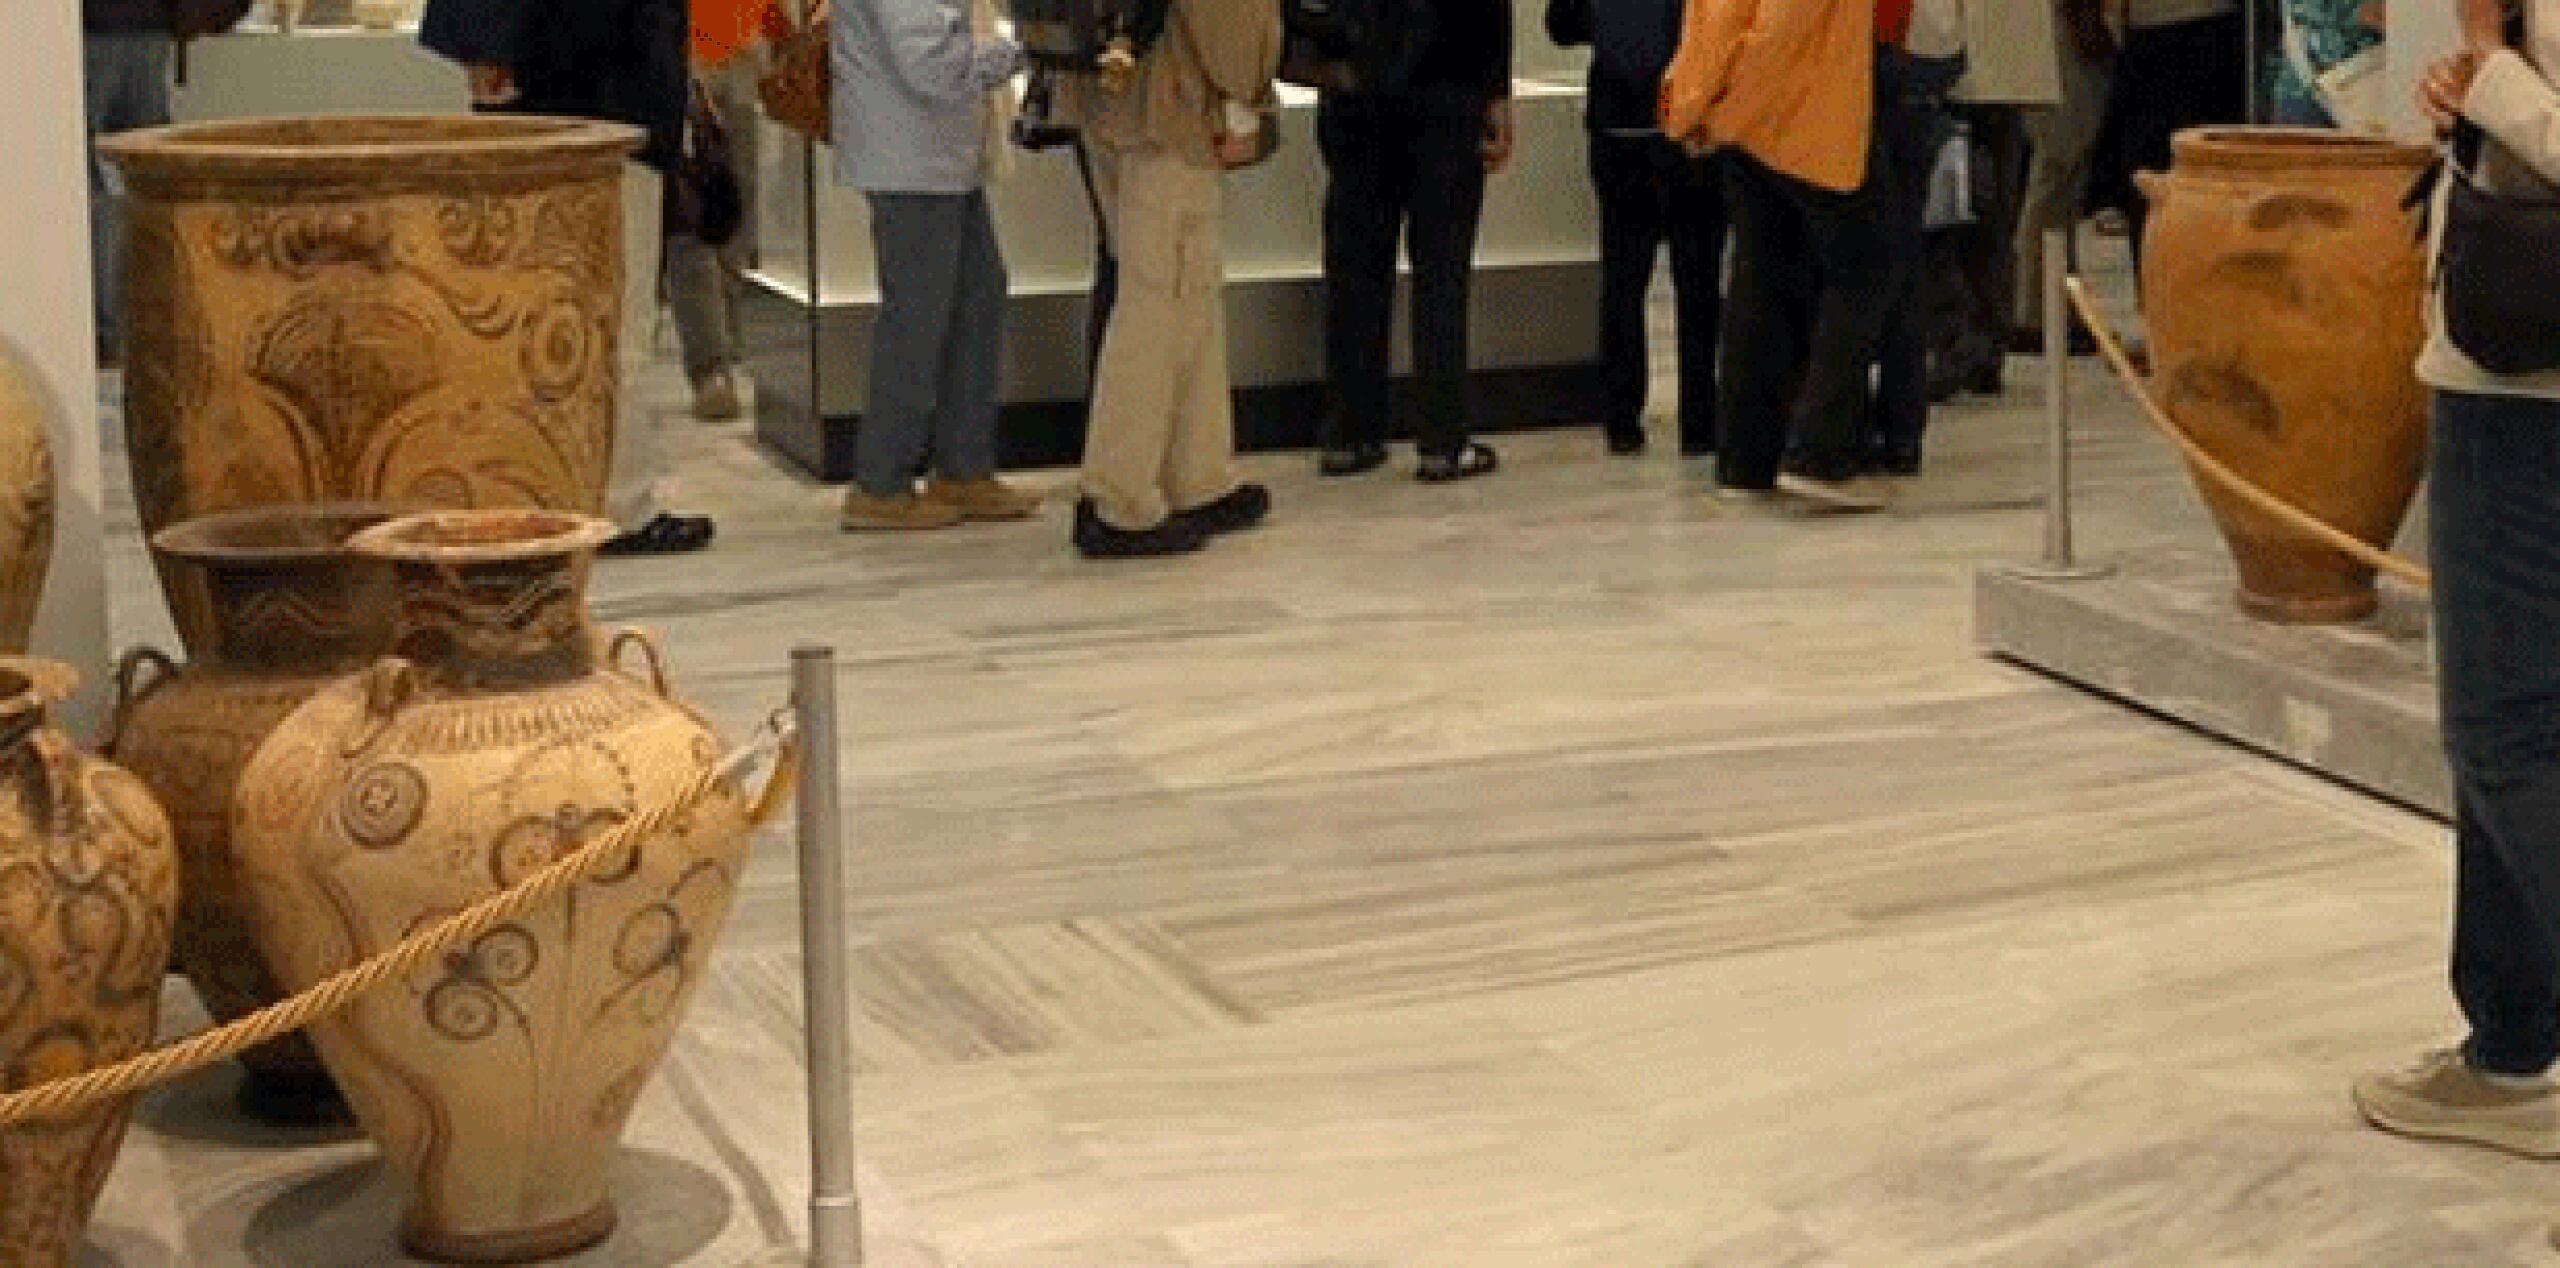 El accidente ocurrió el 23 de mayo en el Museo de Heraclión, en la isla de Creta. La visitante sufrió una herida menor en la pierna, dijo el ministerio hoy. (ethnos.gr)